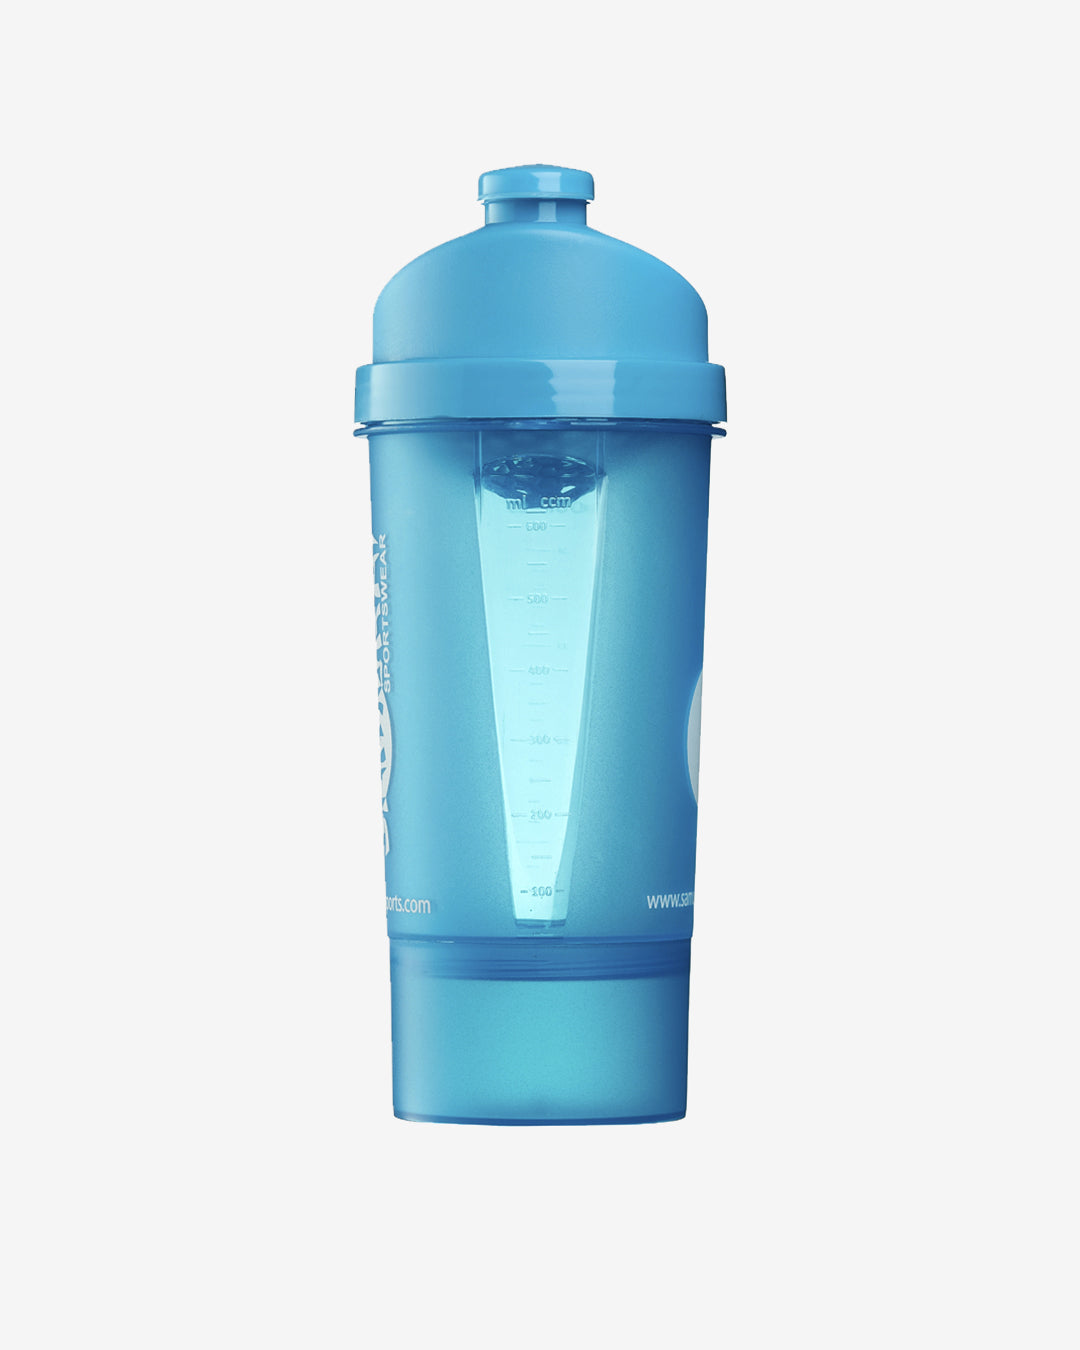 Hc: 9645 - Protein Shaker Bottle 600ml - Blue